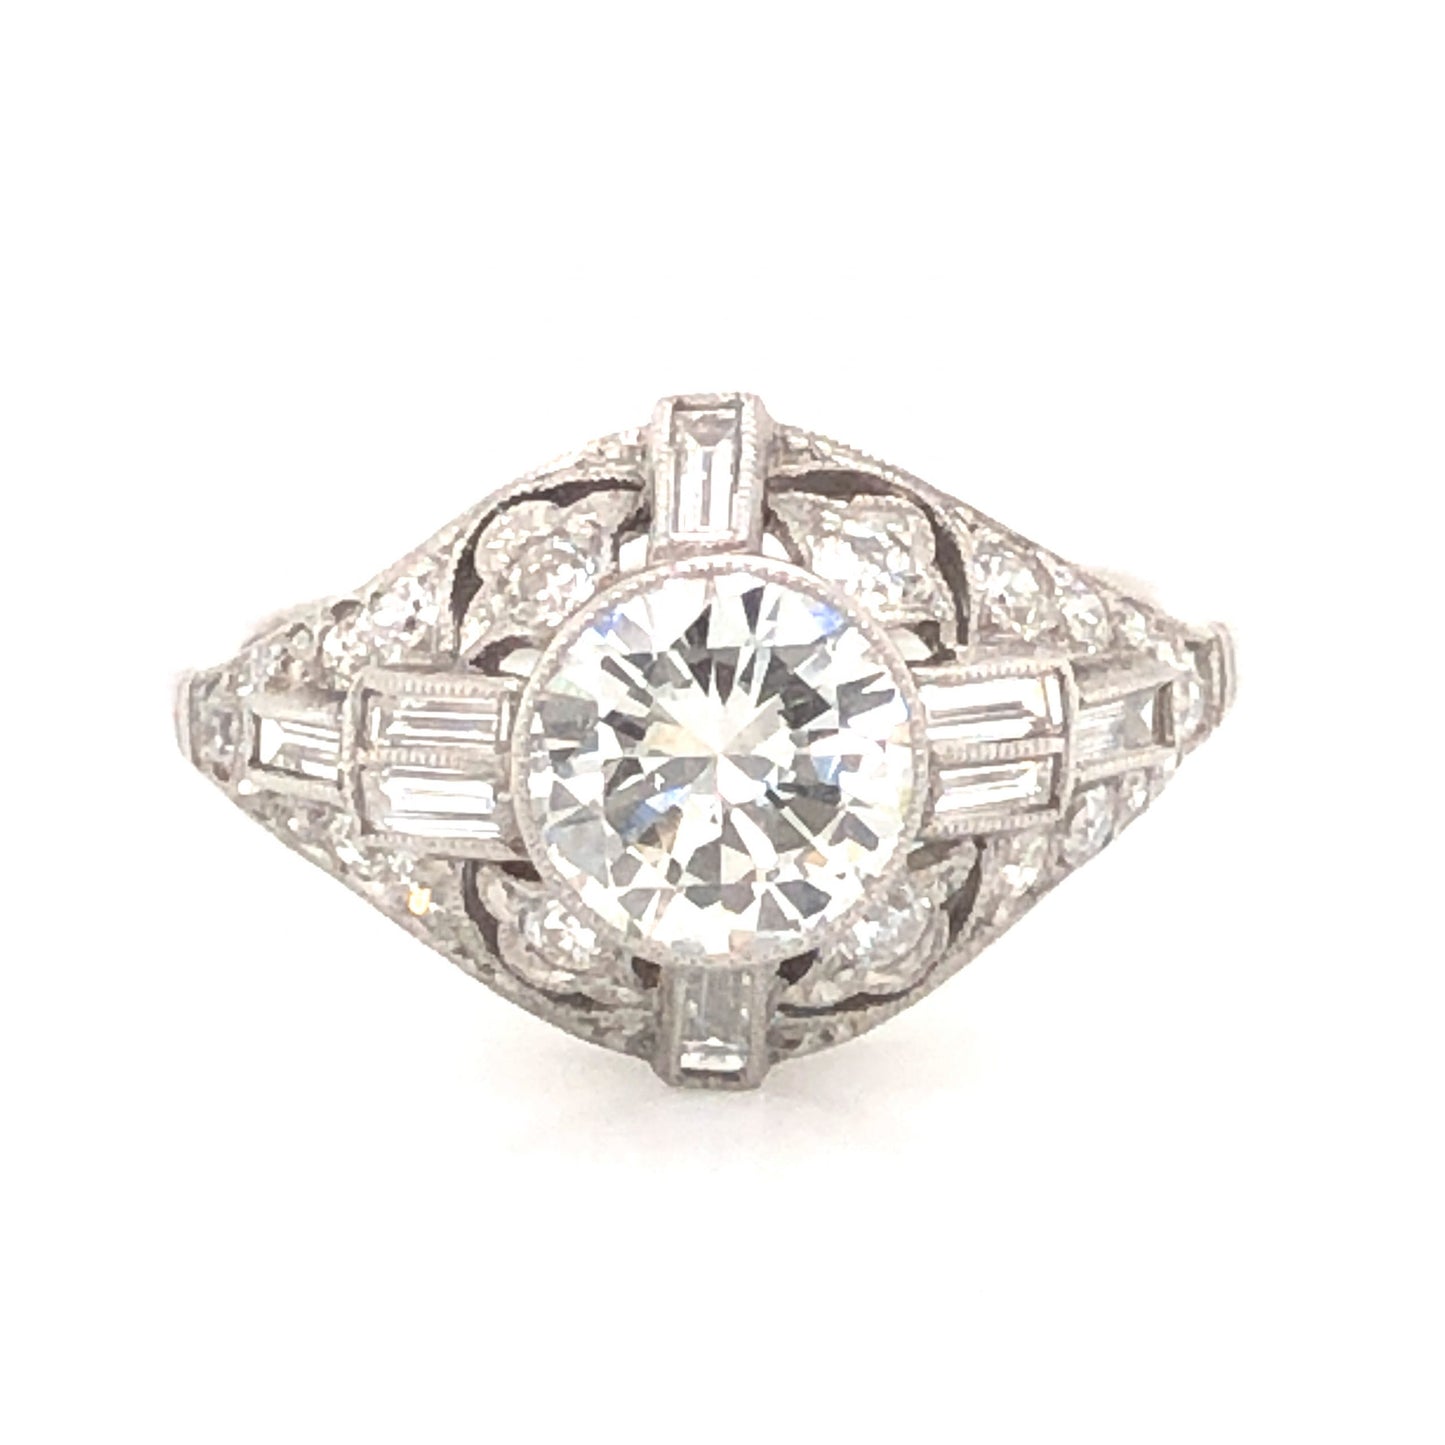 1.01 Vintage Art Deco Diamond Engagement Ring in Platinum